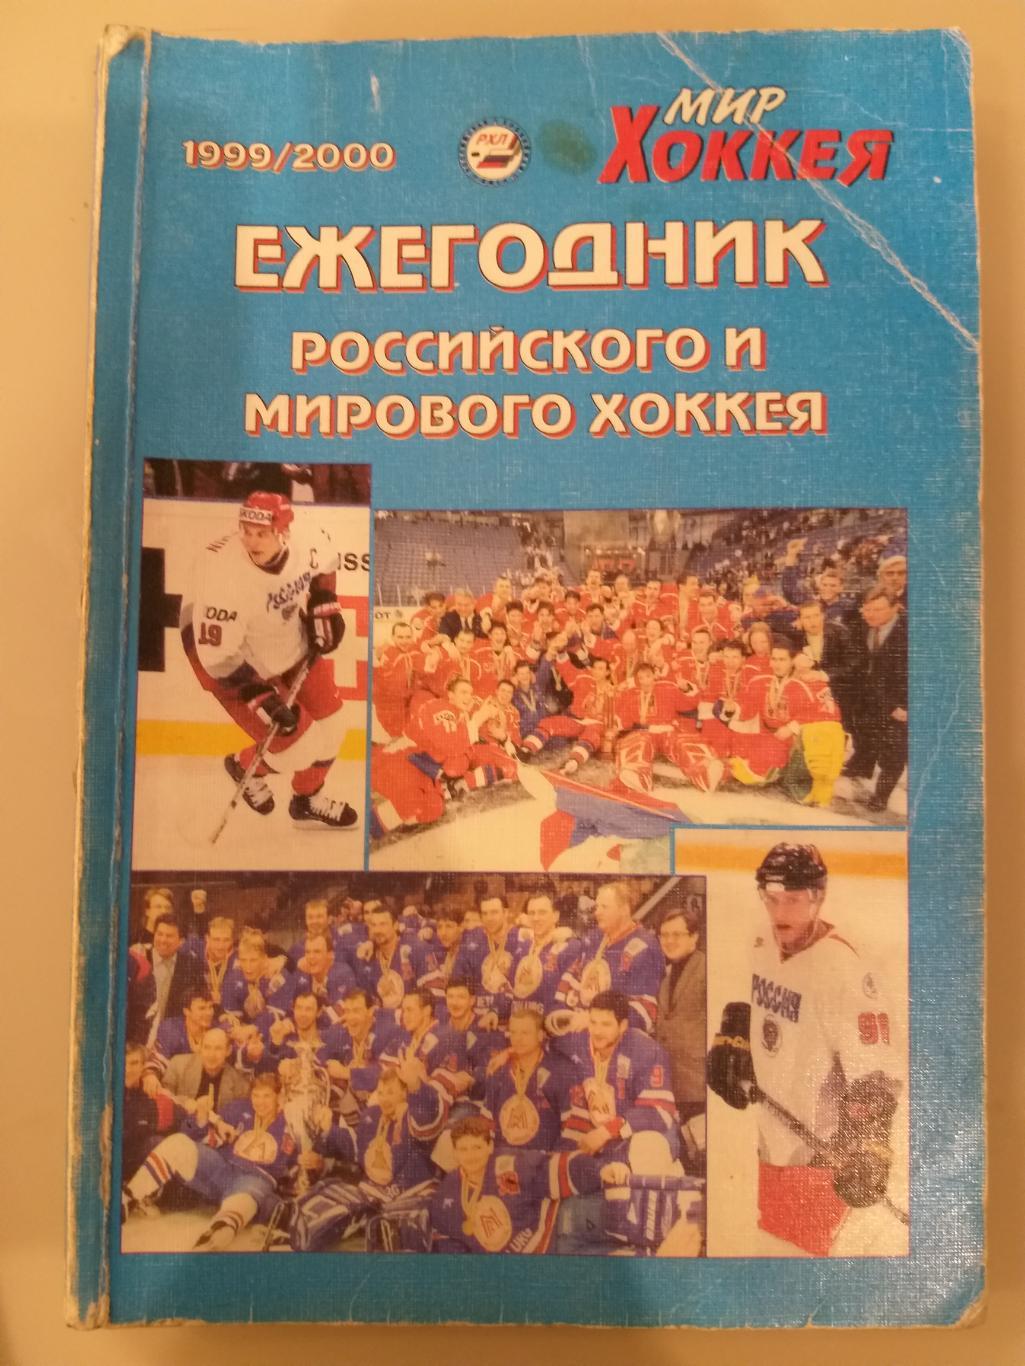 Ежегодник российского и мирового хоккея 1999/2000 Мир хоккея